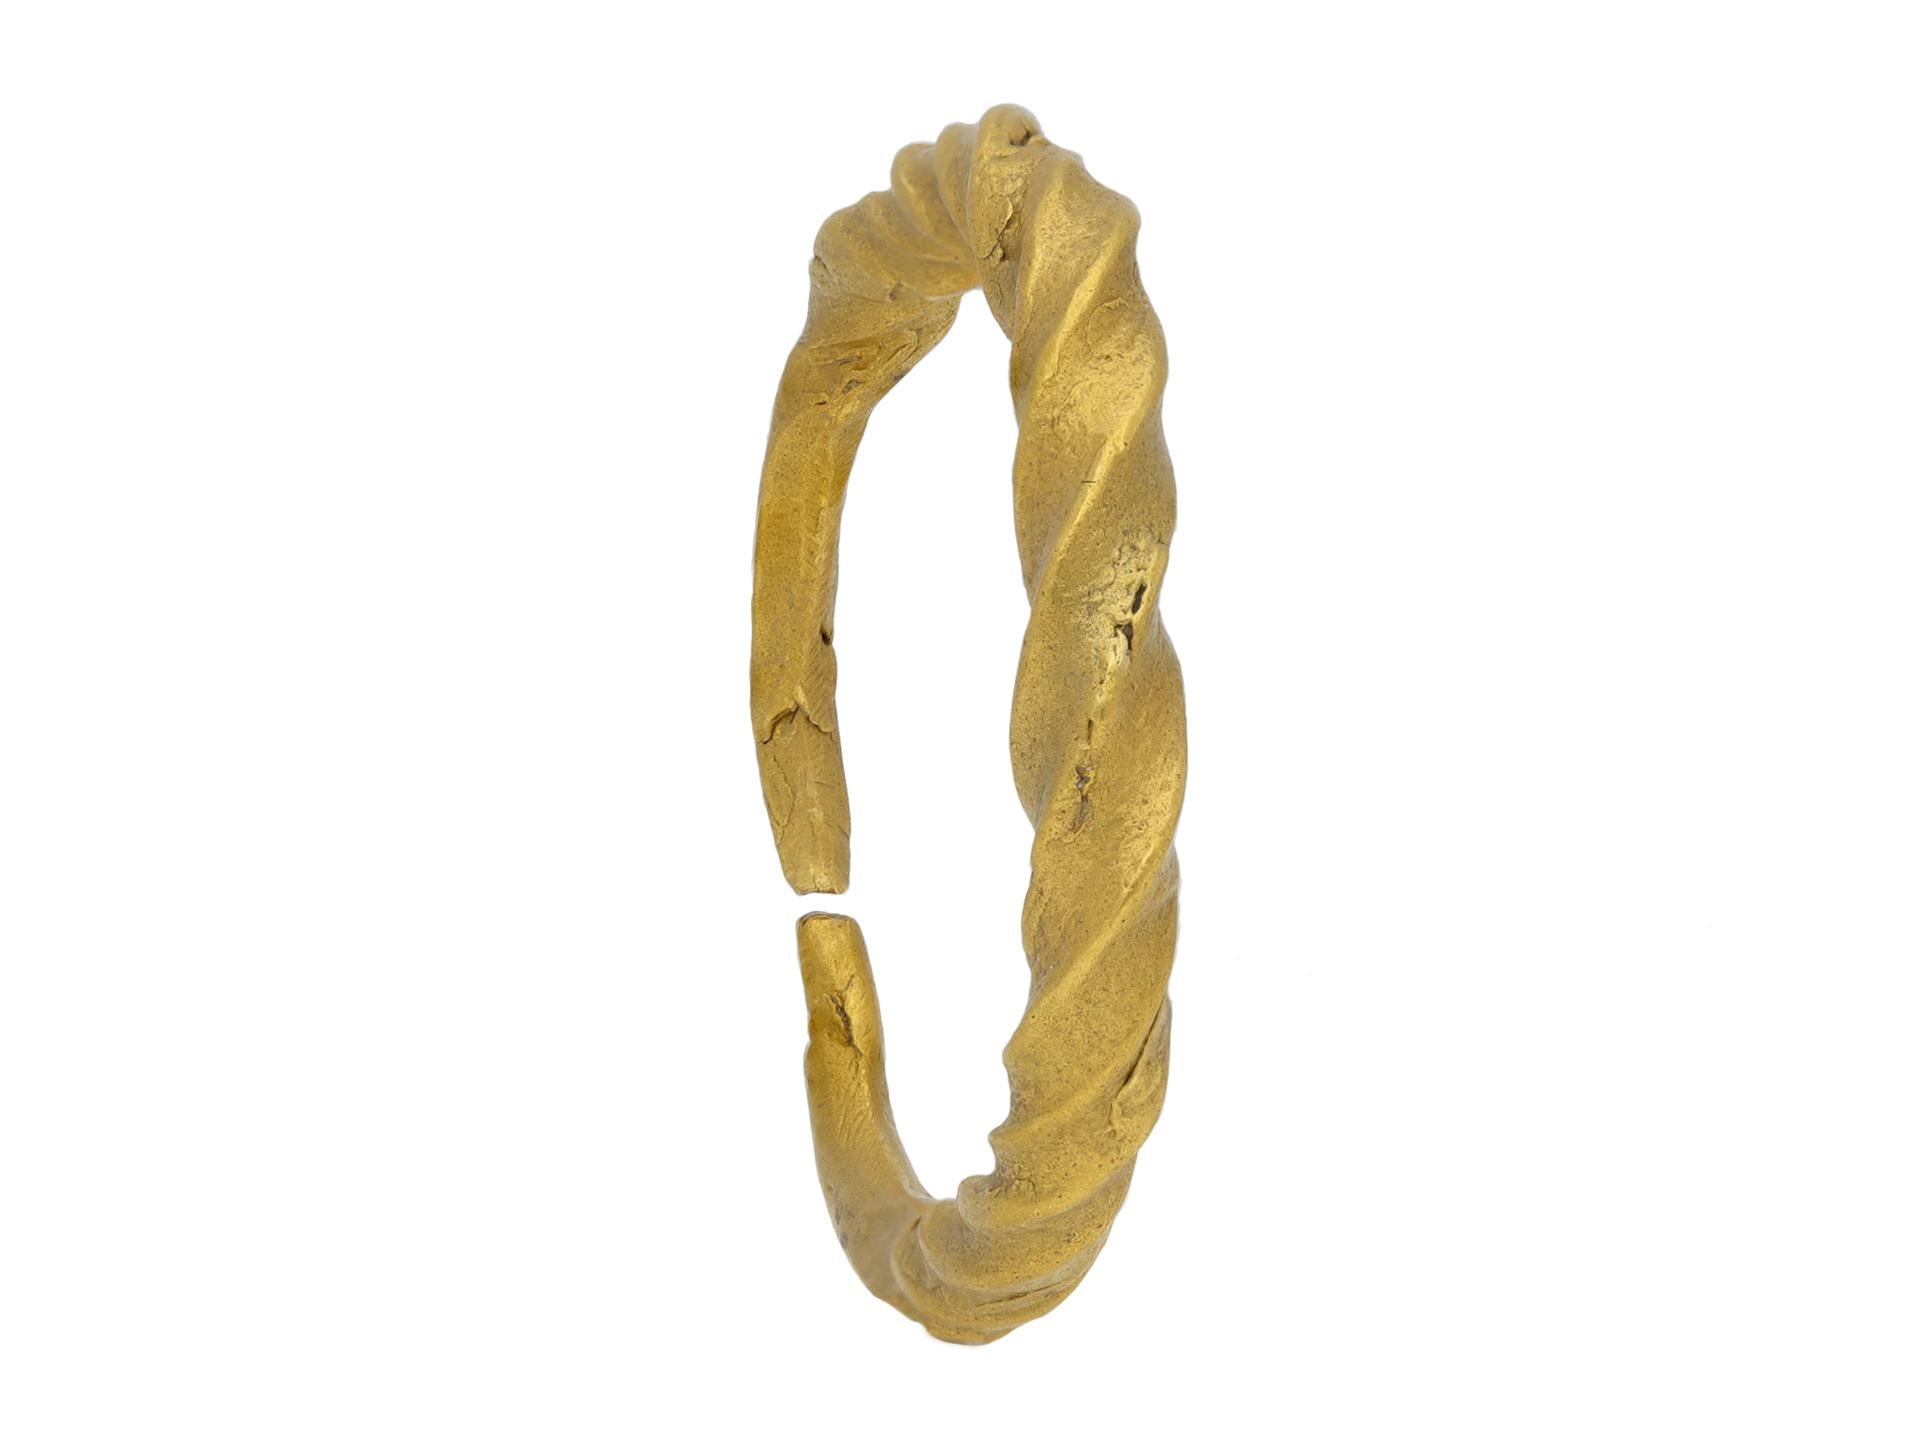 Ring aus Wikingergold mit gedrehtem Penannular. Ein Ring aus Gelbgold, der aus einem einzelnen, gedrehten Goldstab besteht, der von der Mitte aus allmählich ansteigt, wobei die Enden des Stabes zu einem massiven, spitz zulaufenden, abgerundeten,